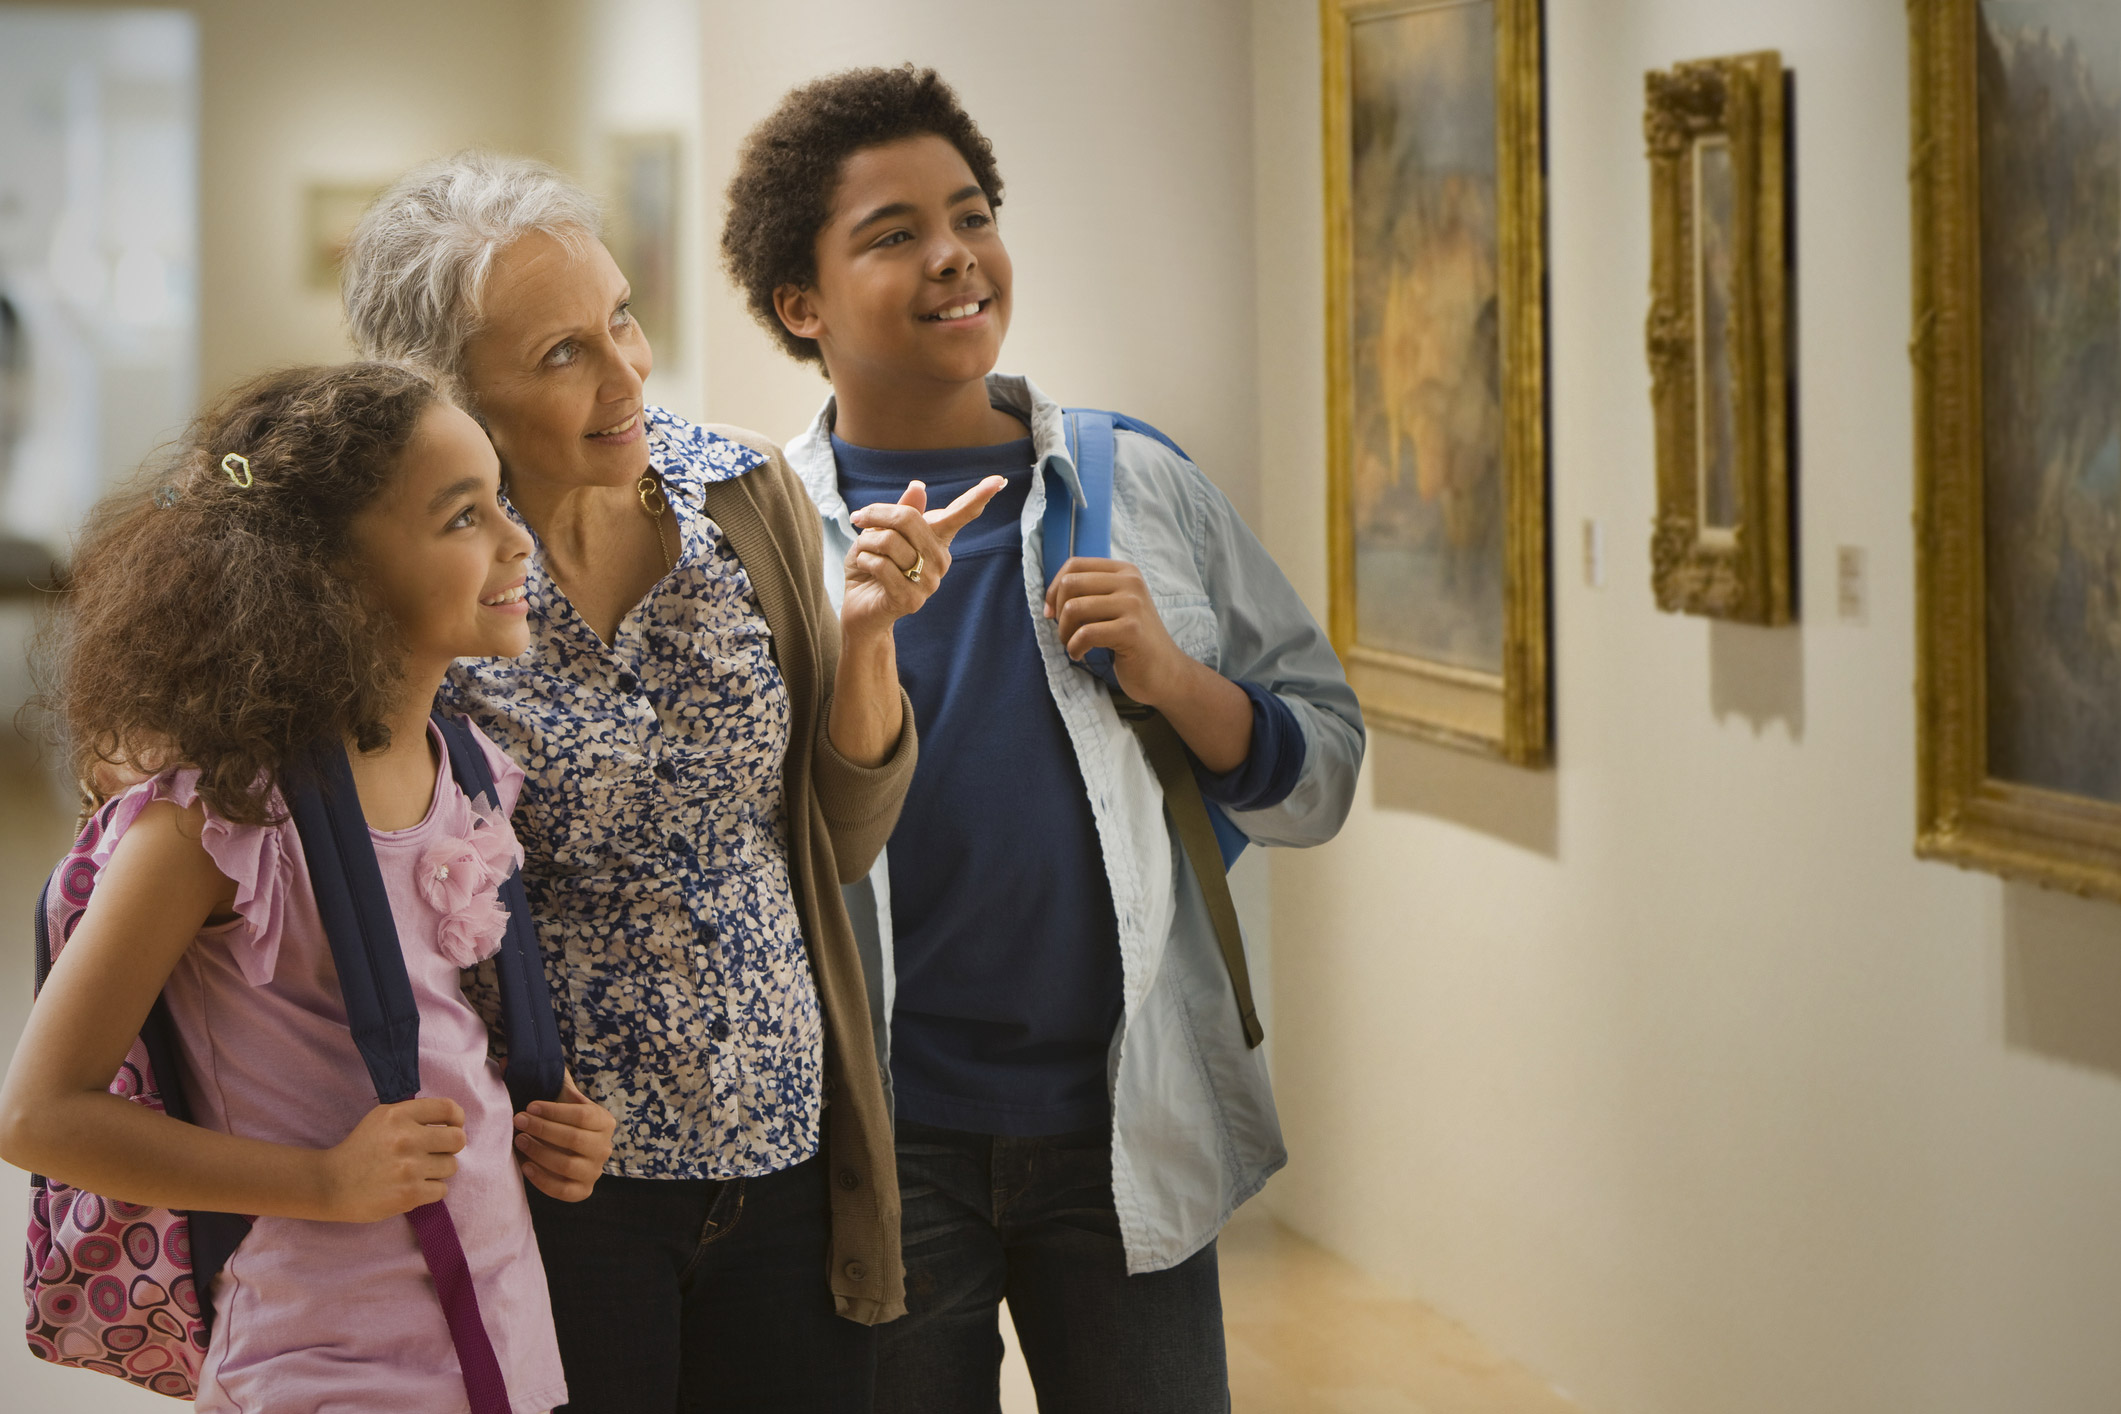 Estudantes e uma pessoa mais velha olhando para um quadro em uma galeria